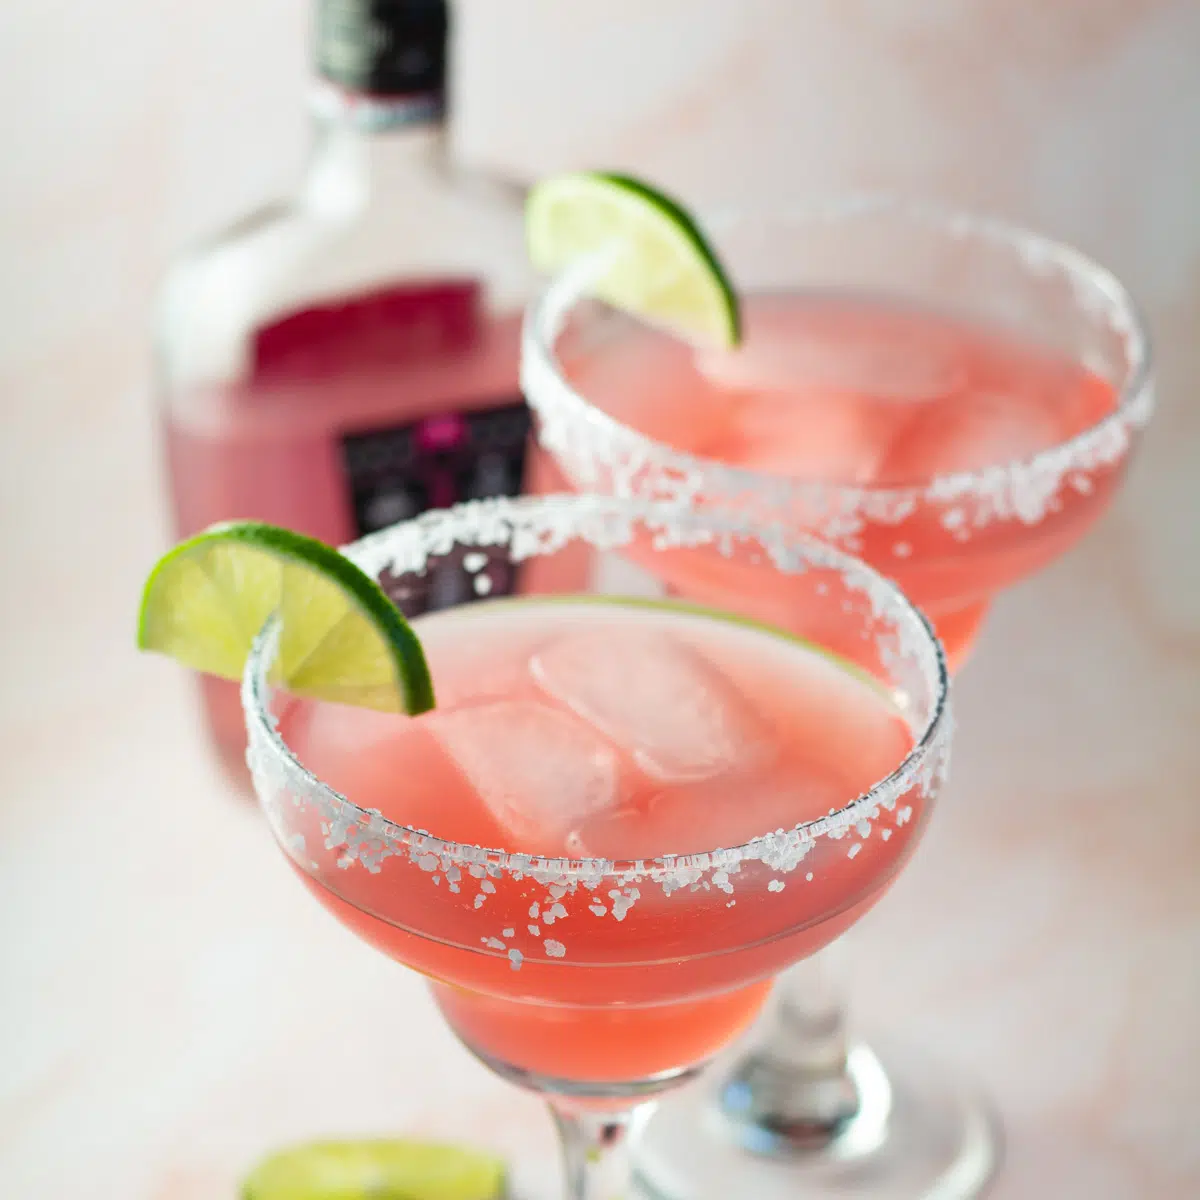 Roze wodka-margarita serveert din margarita-glazen met schijfje citroen op de rand.